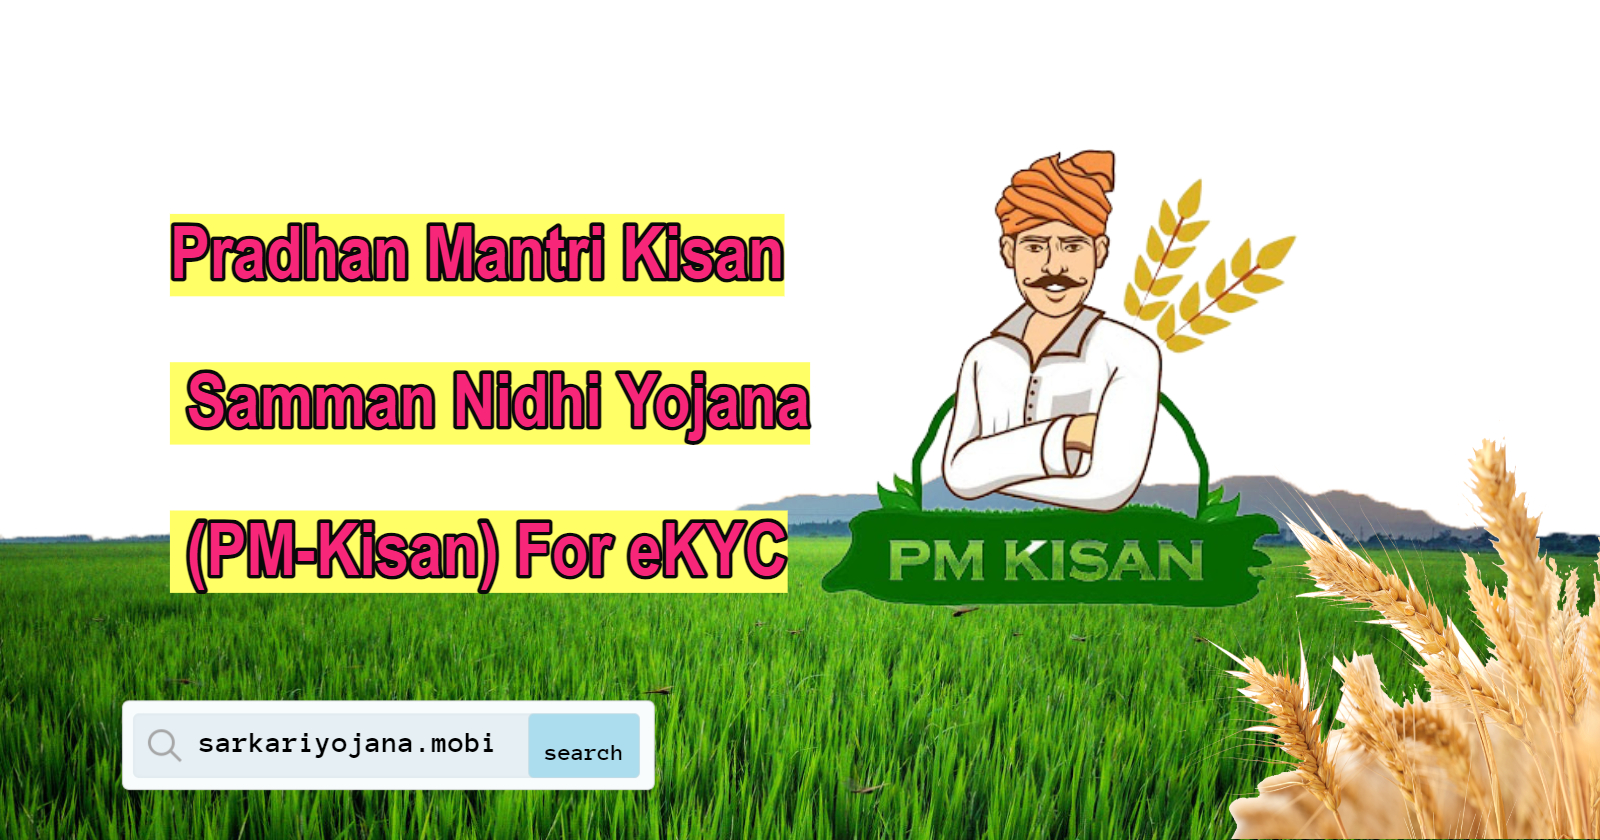 Pradhan-Mantri-Kisan-Samman-Nidhi-Yojana-PM-Kisan-For-eKYC